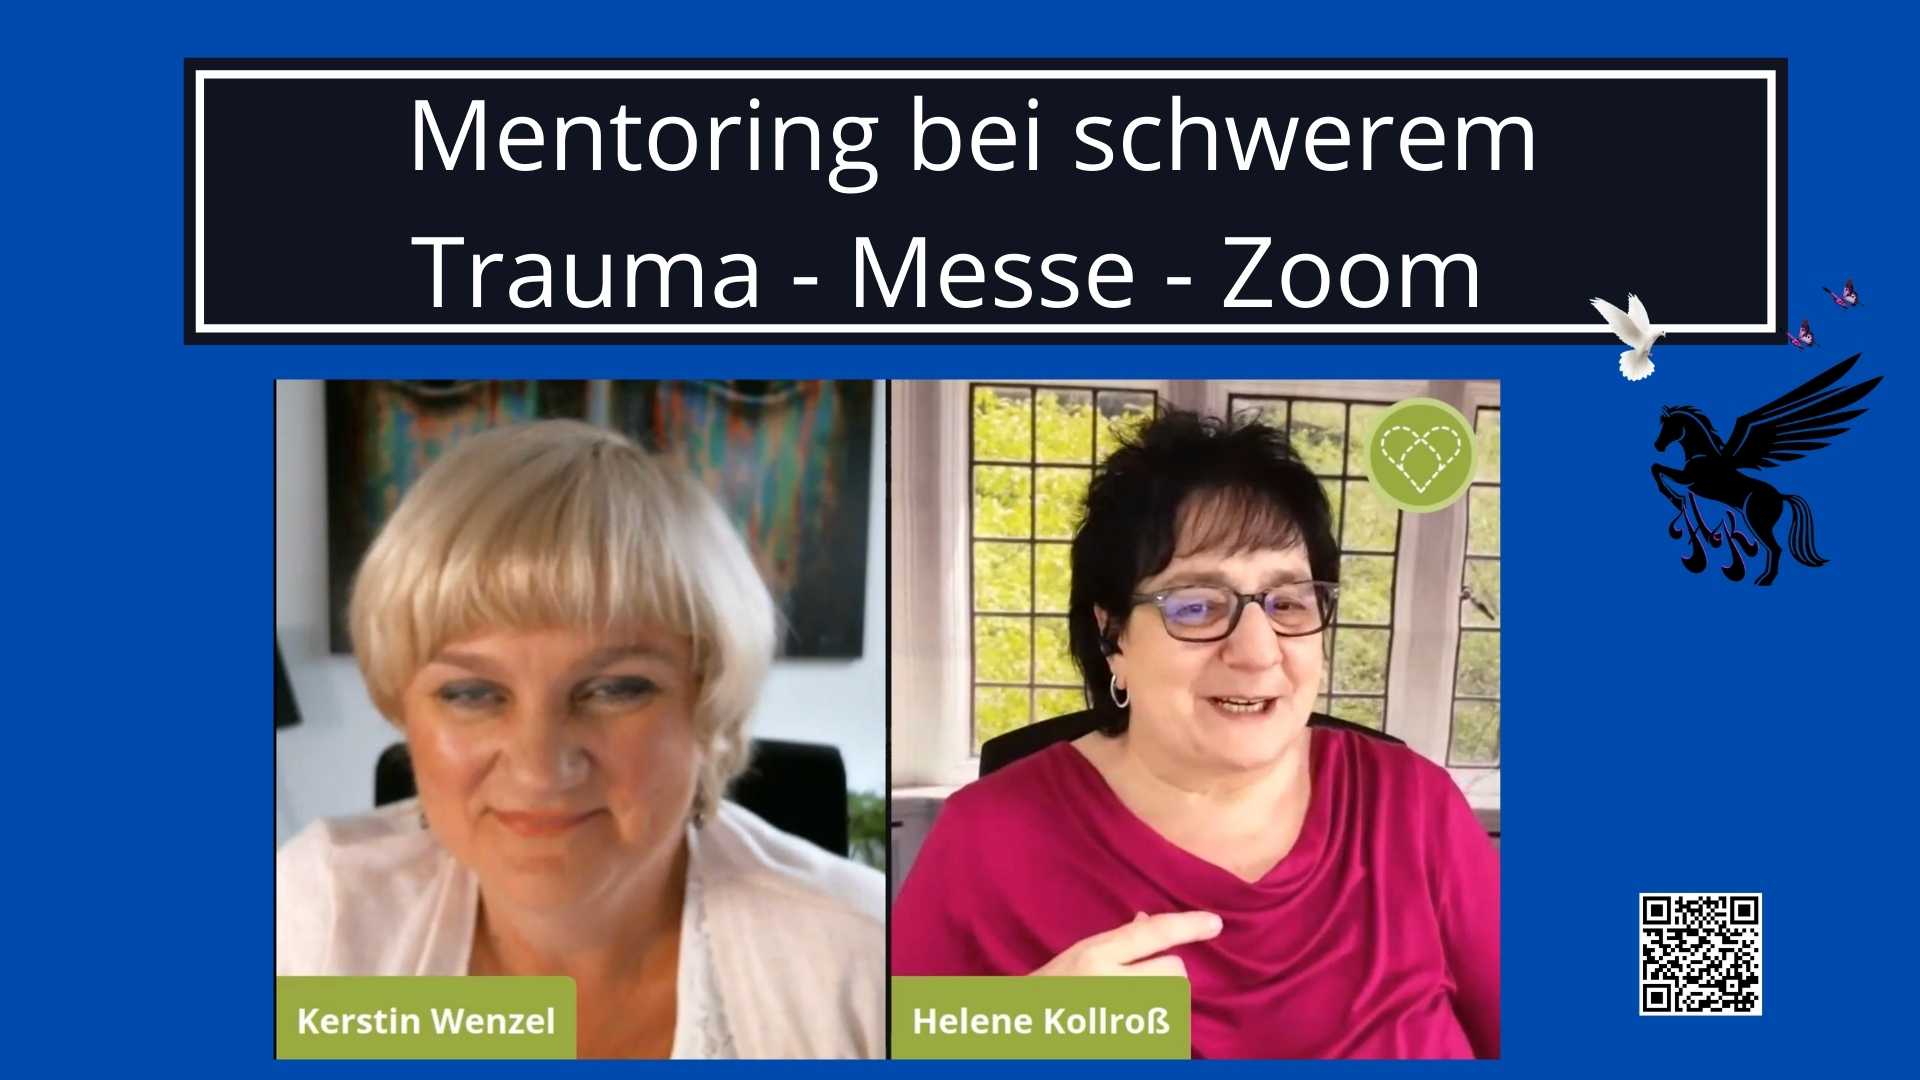 Persönlichkeitsentwicklung, Mentoring bei schwerem Trauma - Messe - Zoom - Video Impuls 45